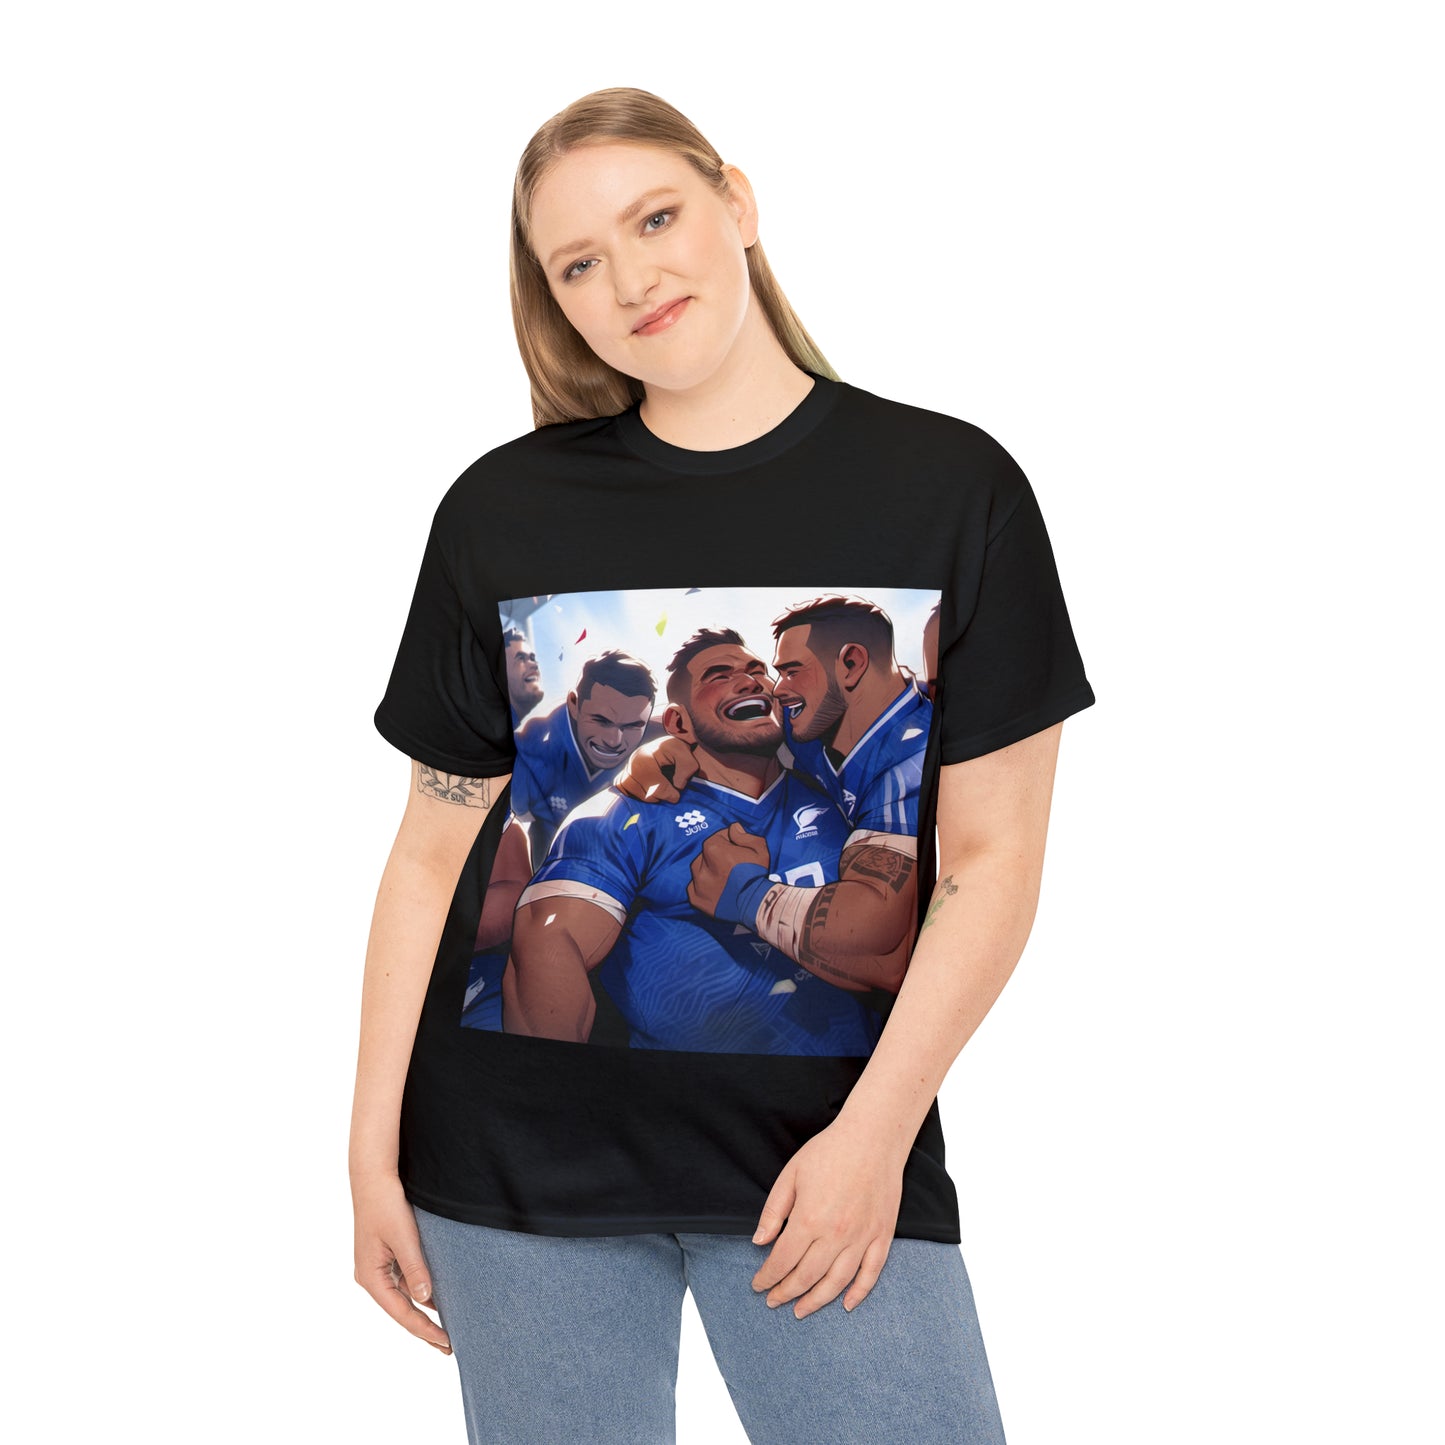 Post Match Samoa - dark shirts